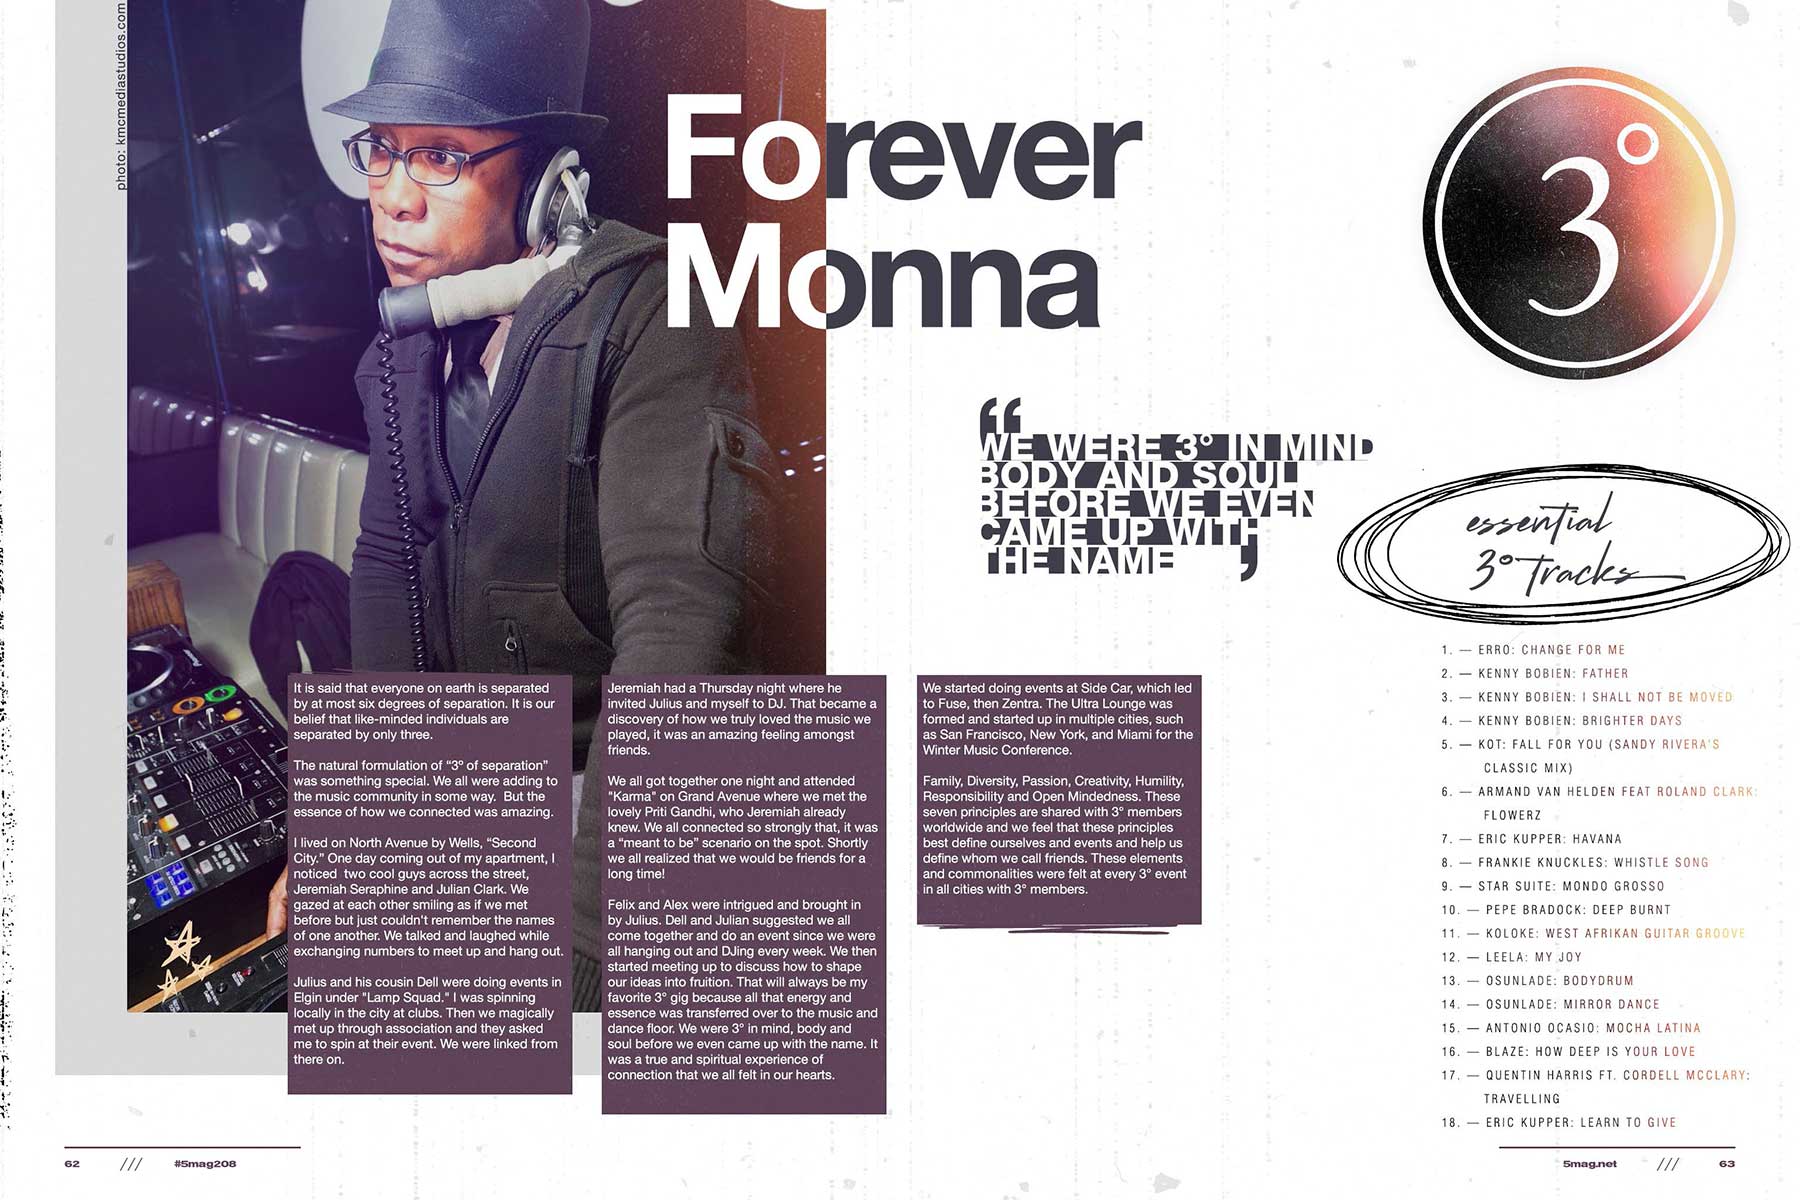 Forever Monna - 3 Degrees Global